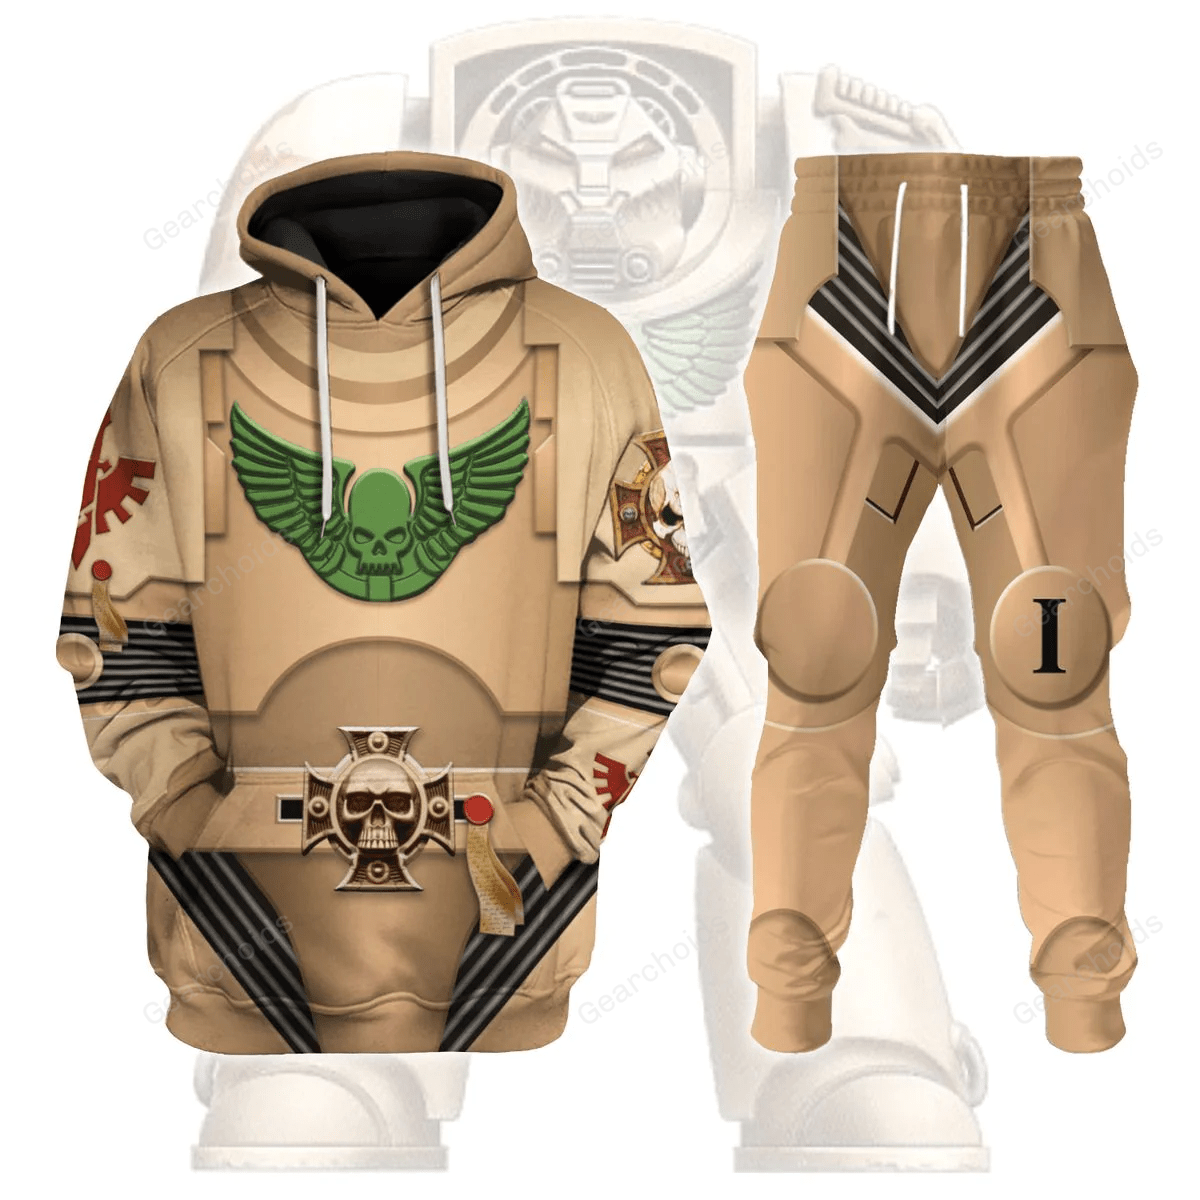 Indomitus Pattern Terminator Armor Dark Angels - Costume Cosplay Hoodie Sweatshirt Sweatpants